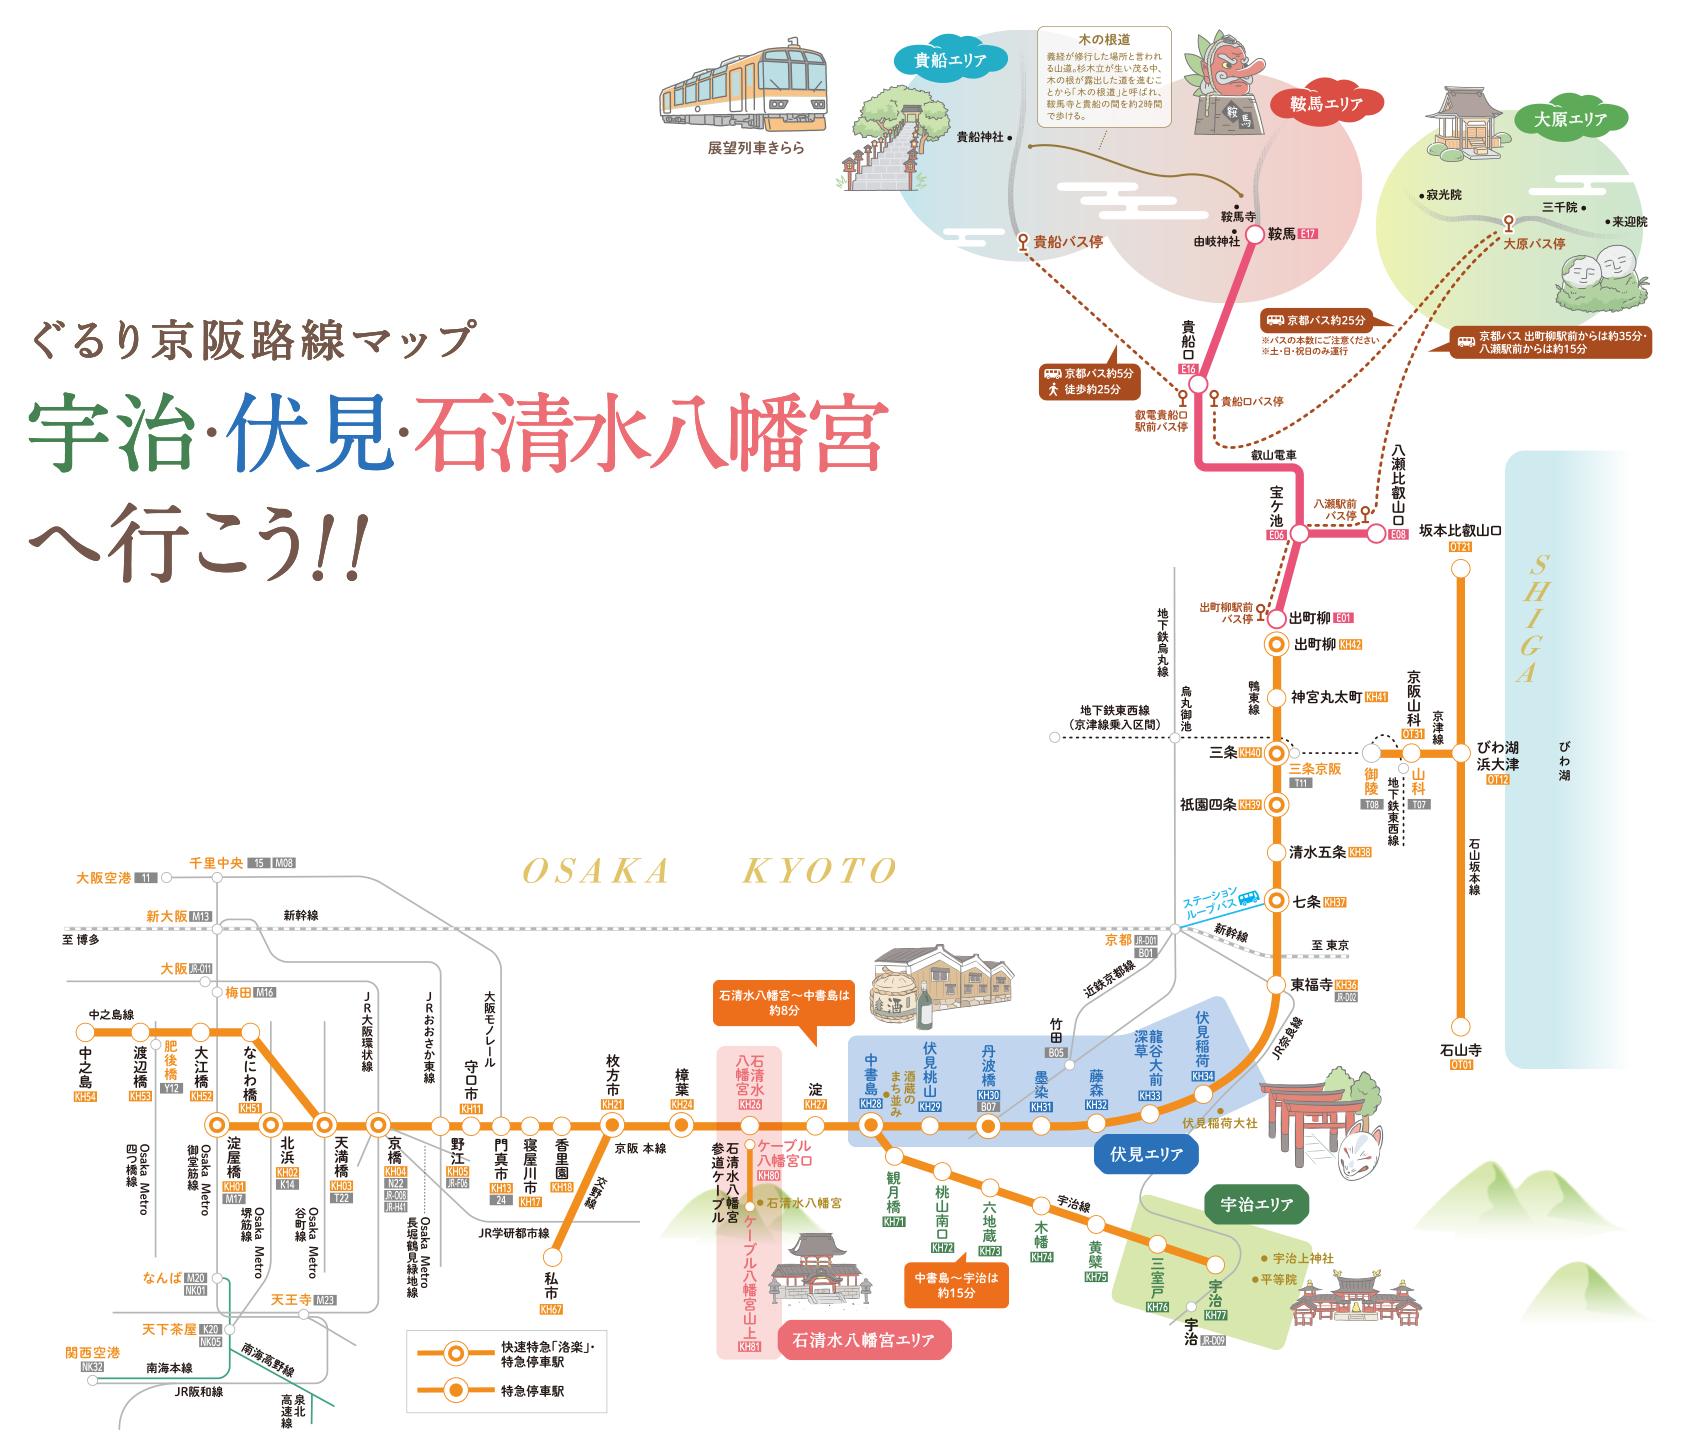 路線図マップ 水と歴史のまちがもっと楽しくなる 宇治 伏見 石清水八幡宮 おすすめ 沿線おでかけ情報 おけいはん ねっと 京阪電気鉄道株式会社